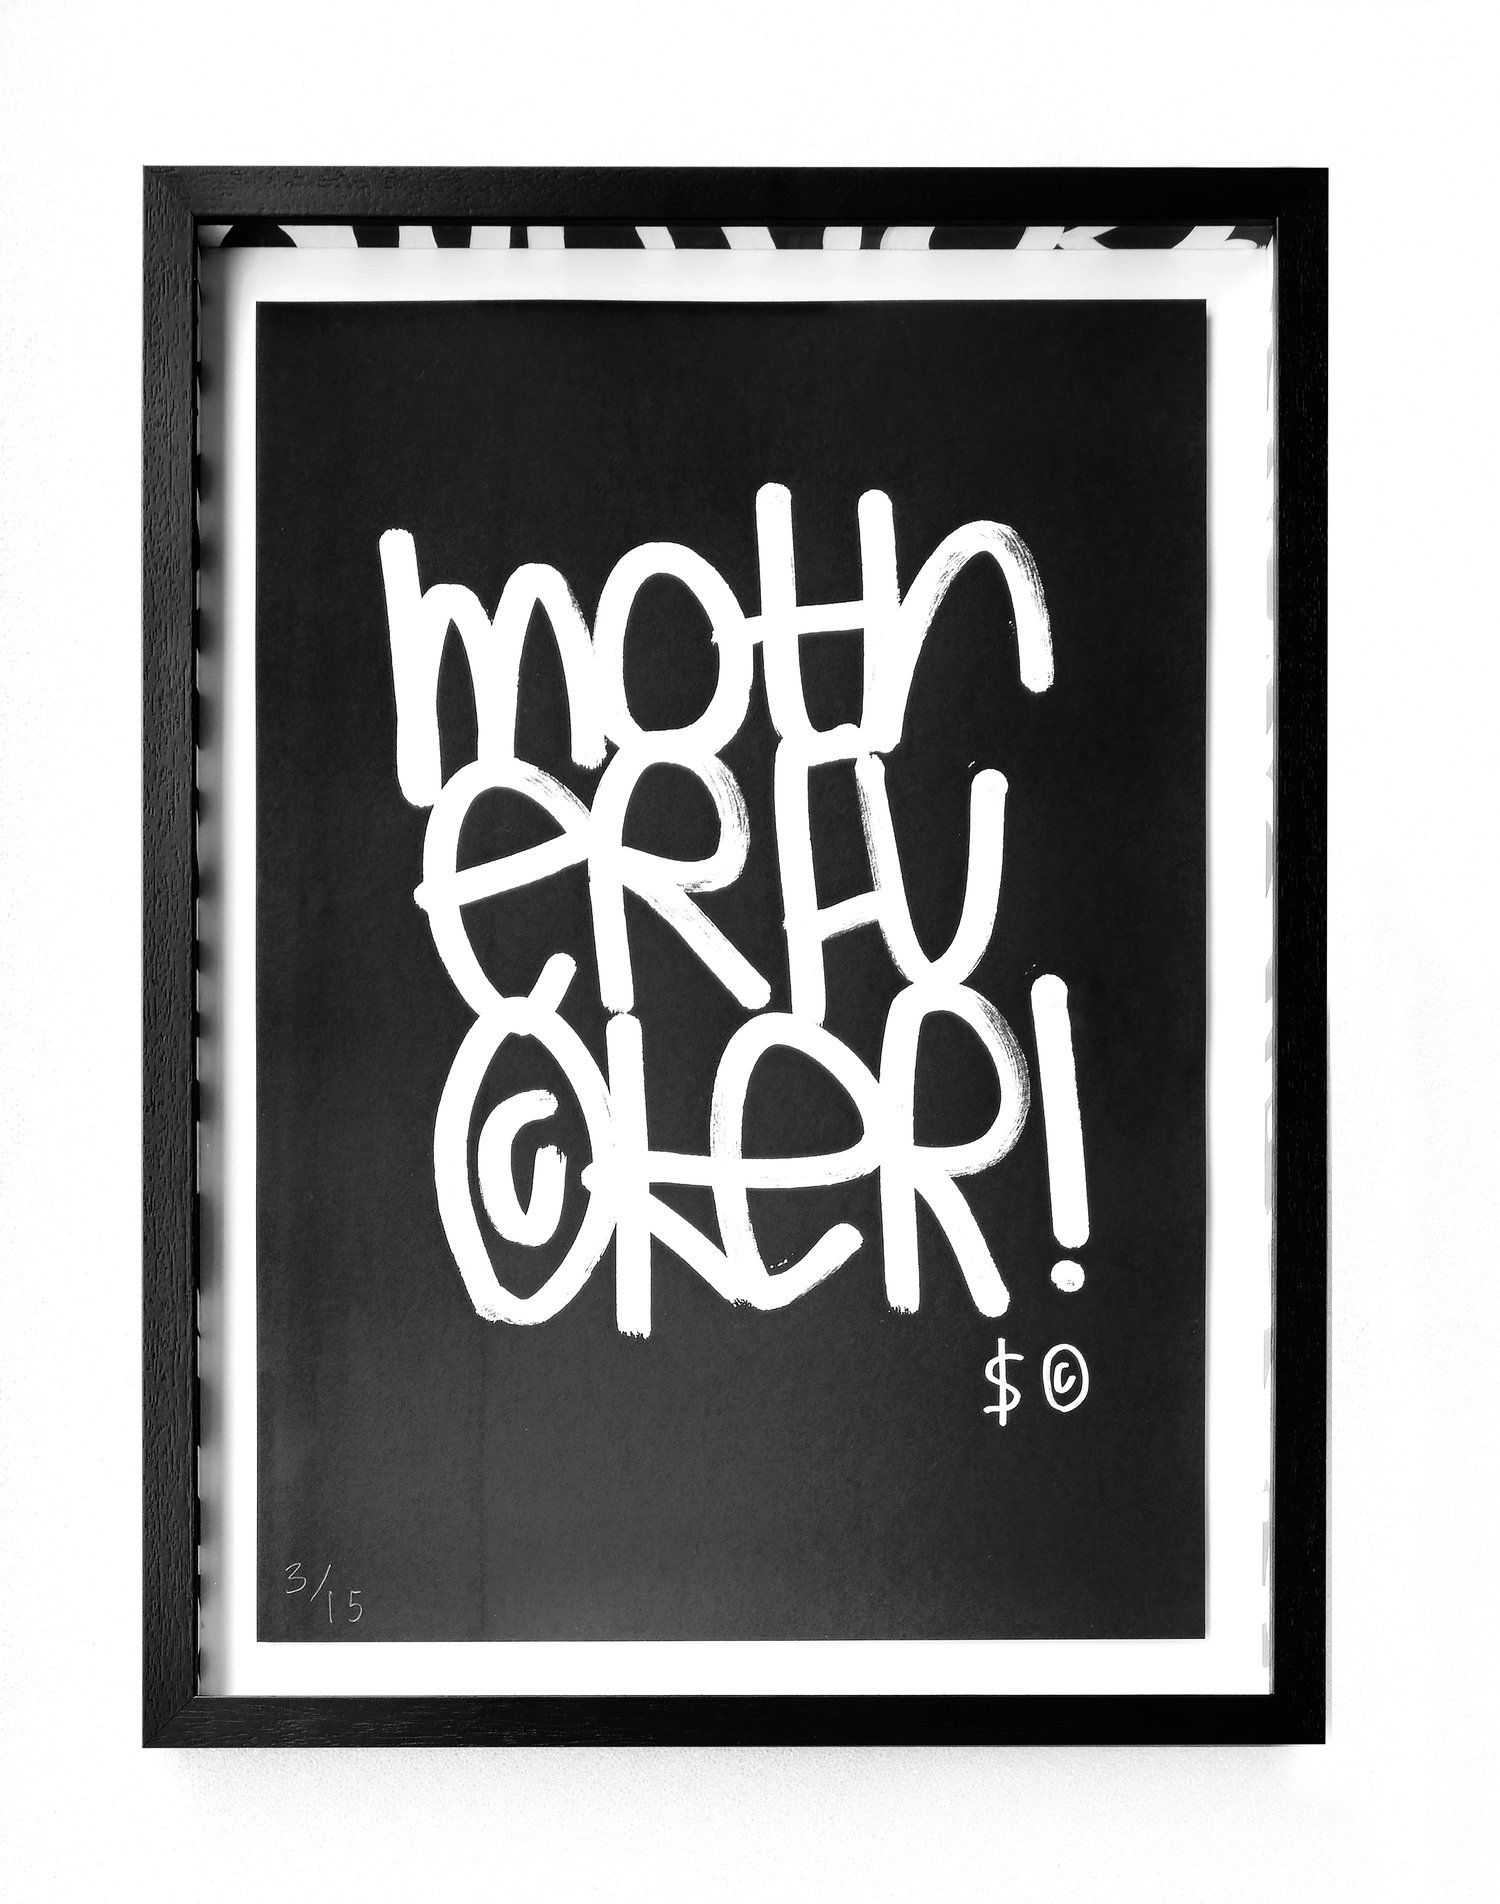 Image of 'Motherfucker' by Skeleton Cardboard